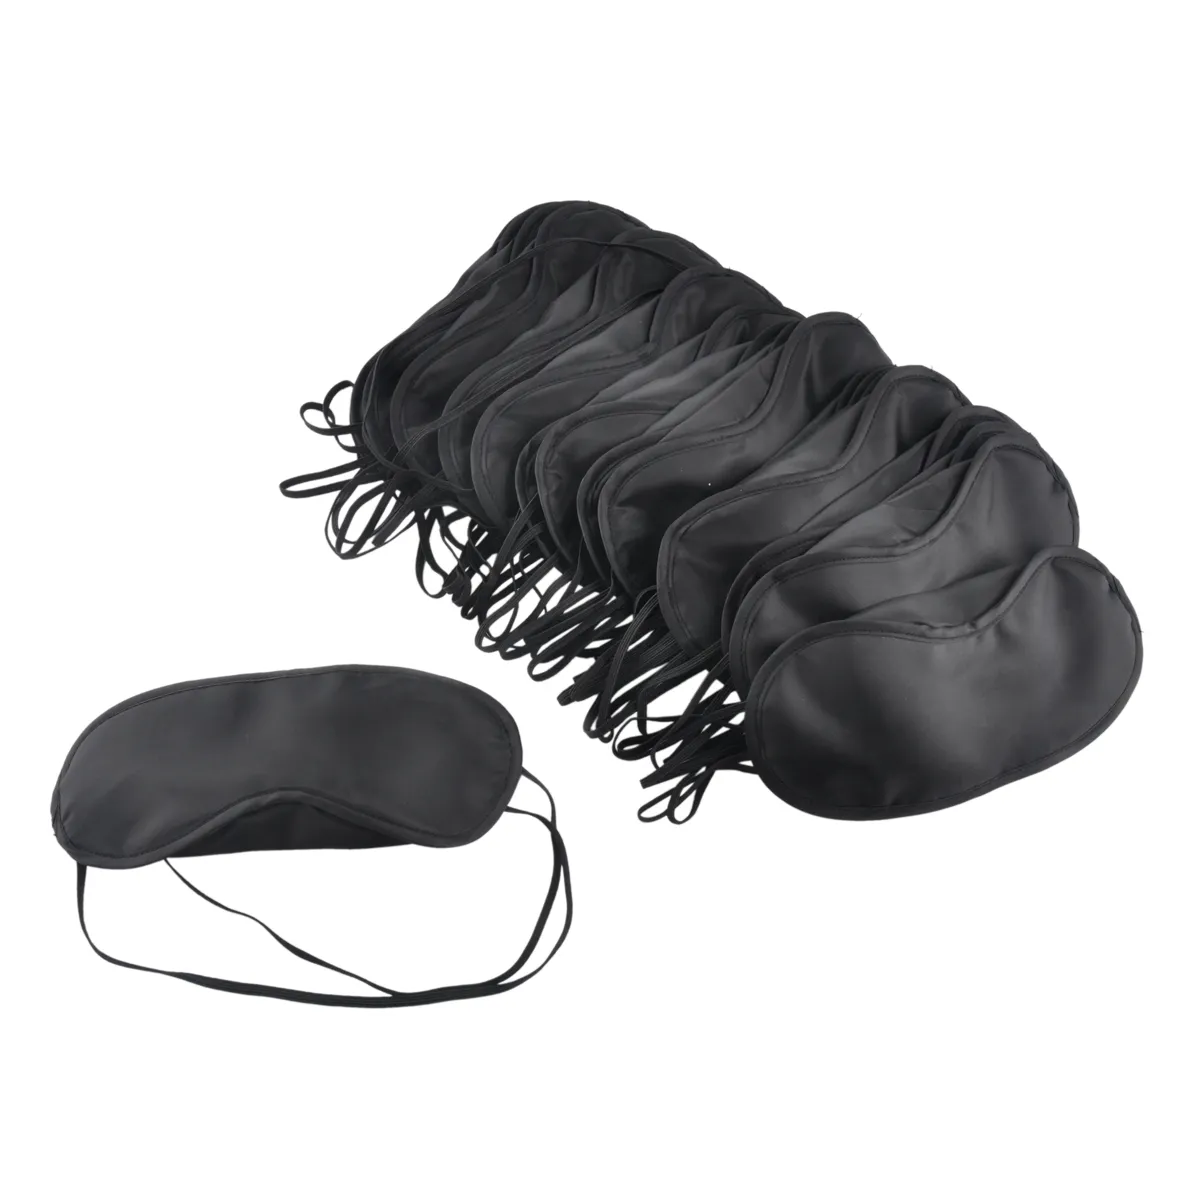 Black Eye Mask Polyester Sponge Shade Nap Cover Masque pour les yeux bandés pour dormir Voyage Masques en polyester doux 4 couches DHL gratuit